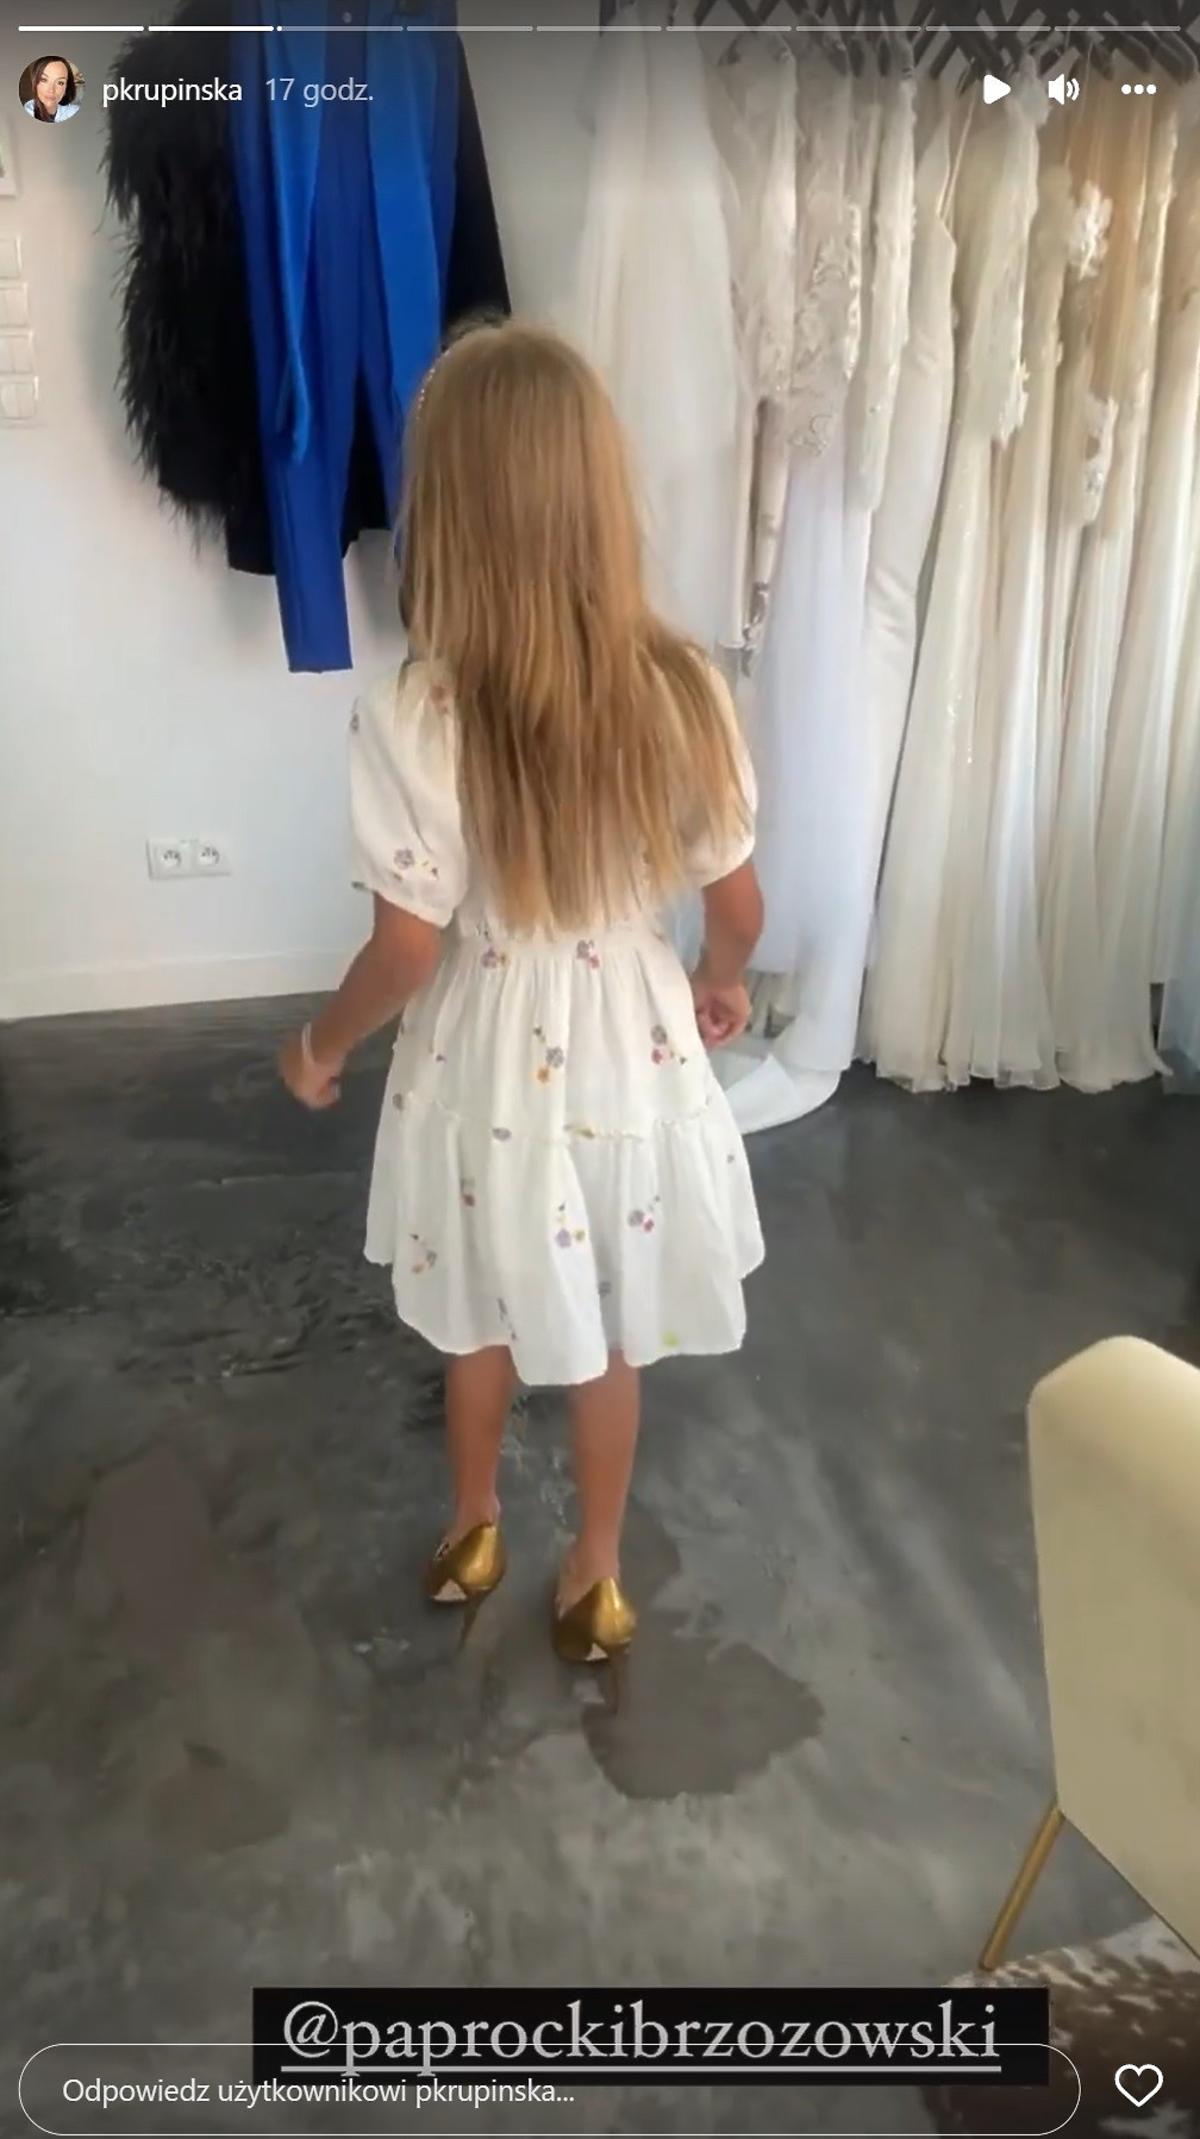 Paulina Krupińska pokazała, jak jej córka chodzi w butach na szpilkach